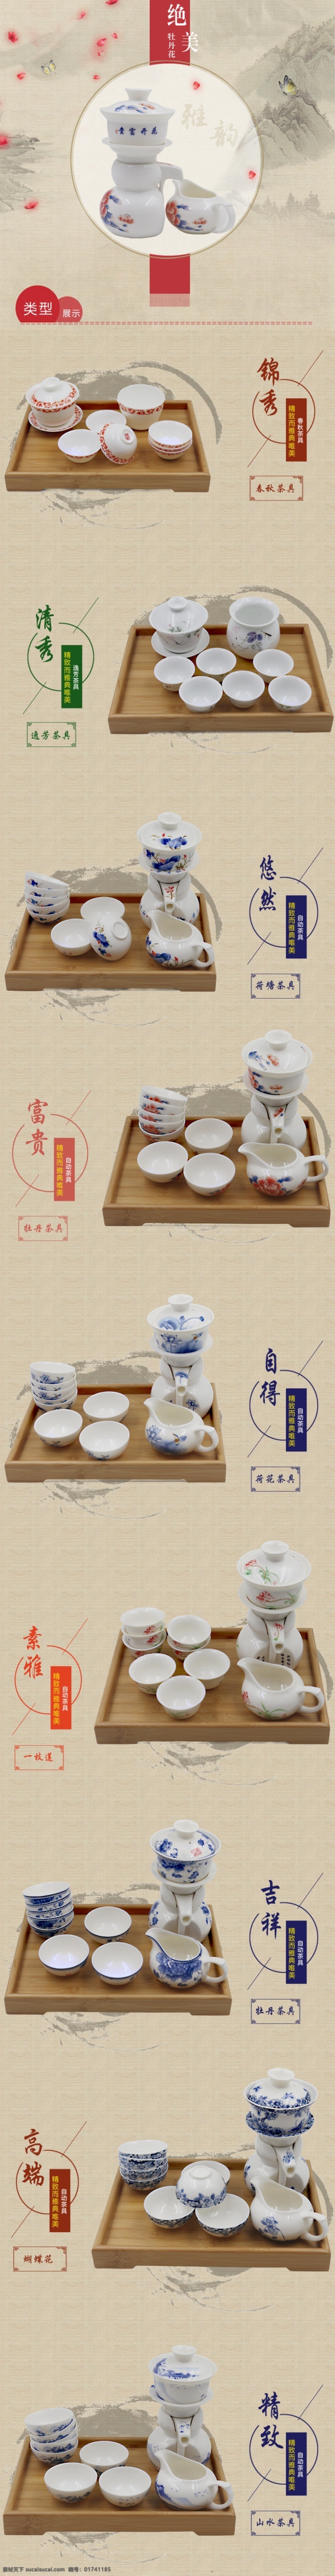 茶具1 茶具详情 中国风 唯美 茶具 茶杯 古典